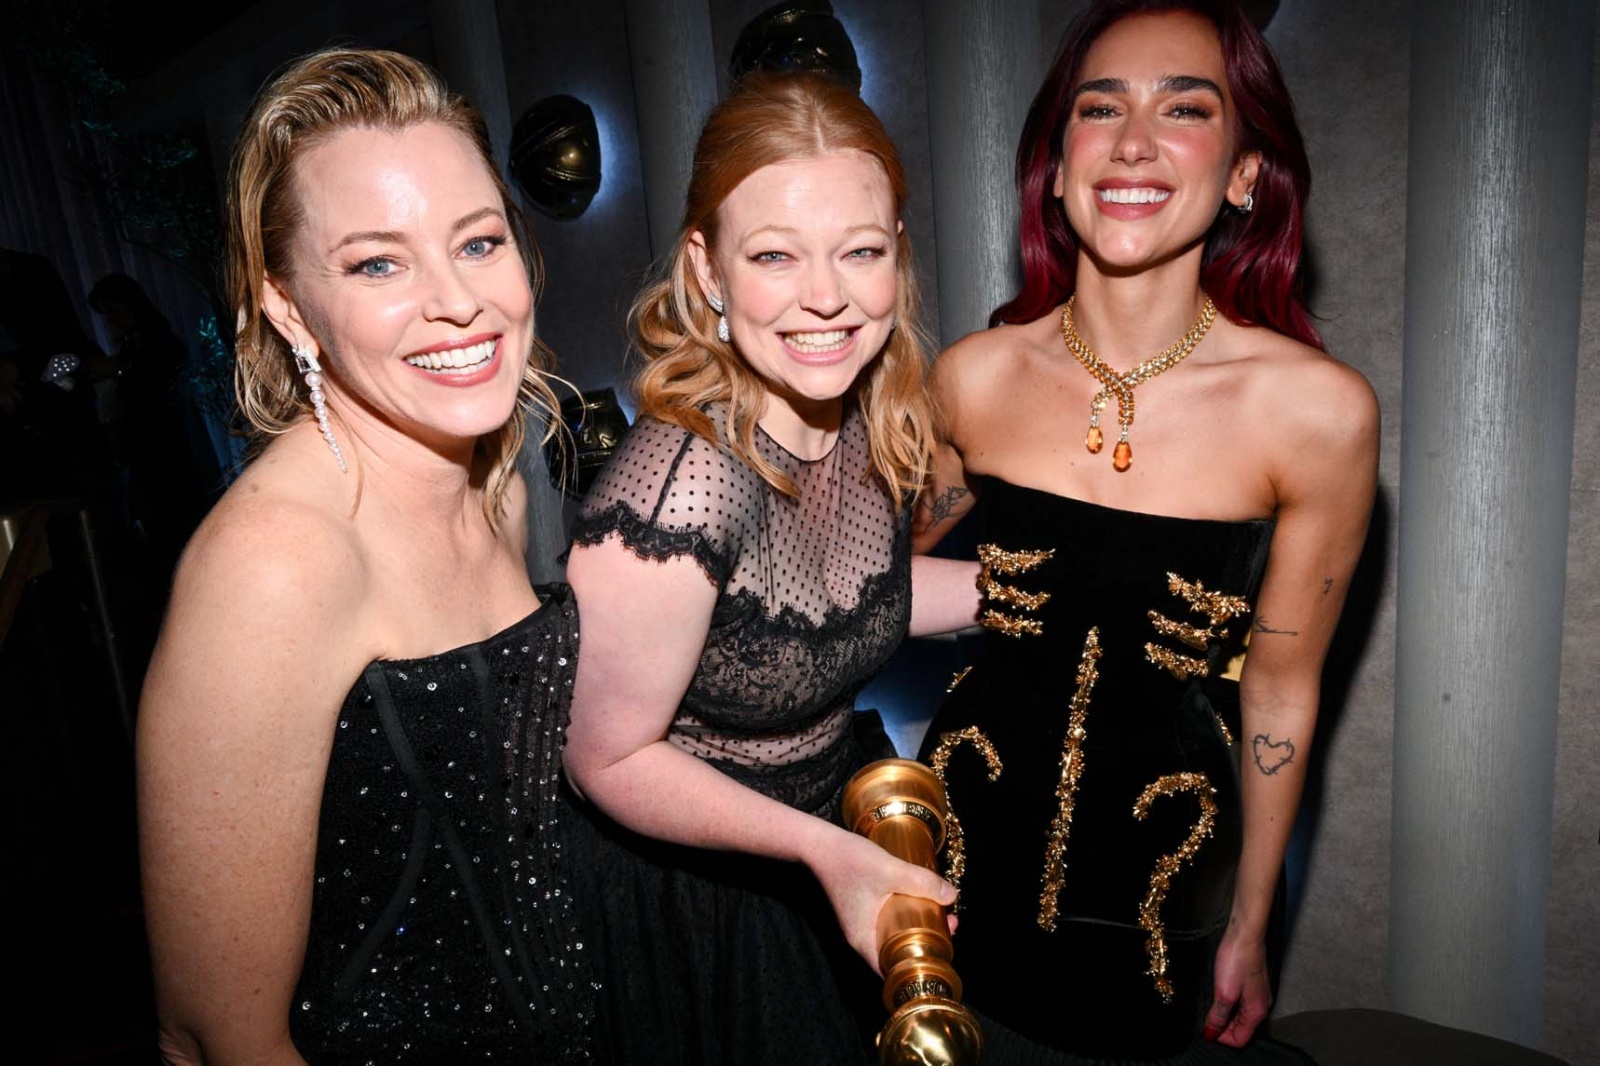 Os momentos mais divertidos nos bastidores dos Golden Globe Awards